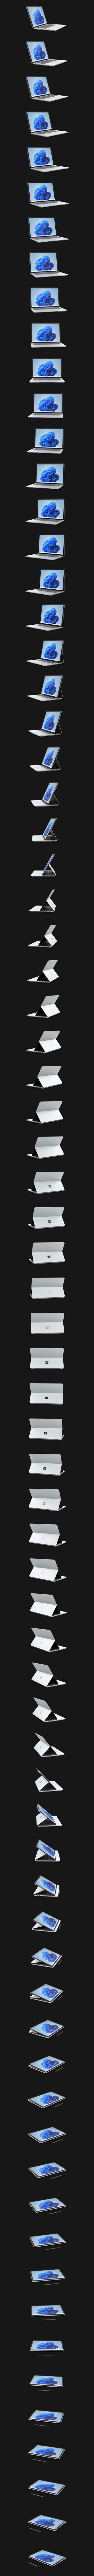 Zařízení Surface Laptop Studio otáčející se o 360stupňů.